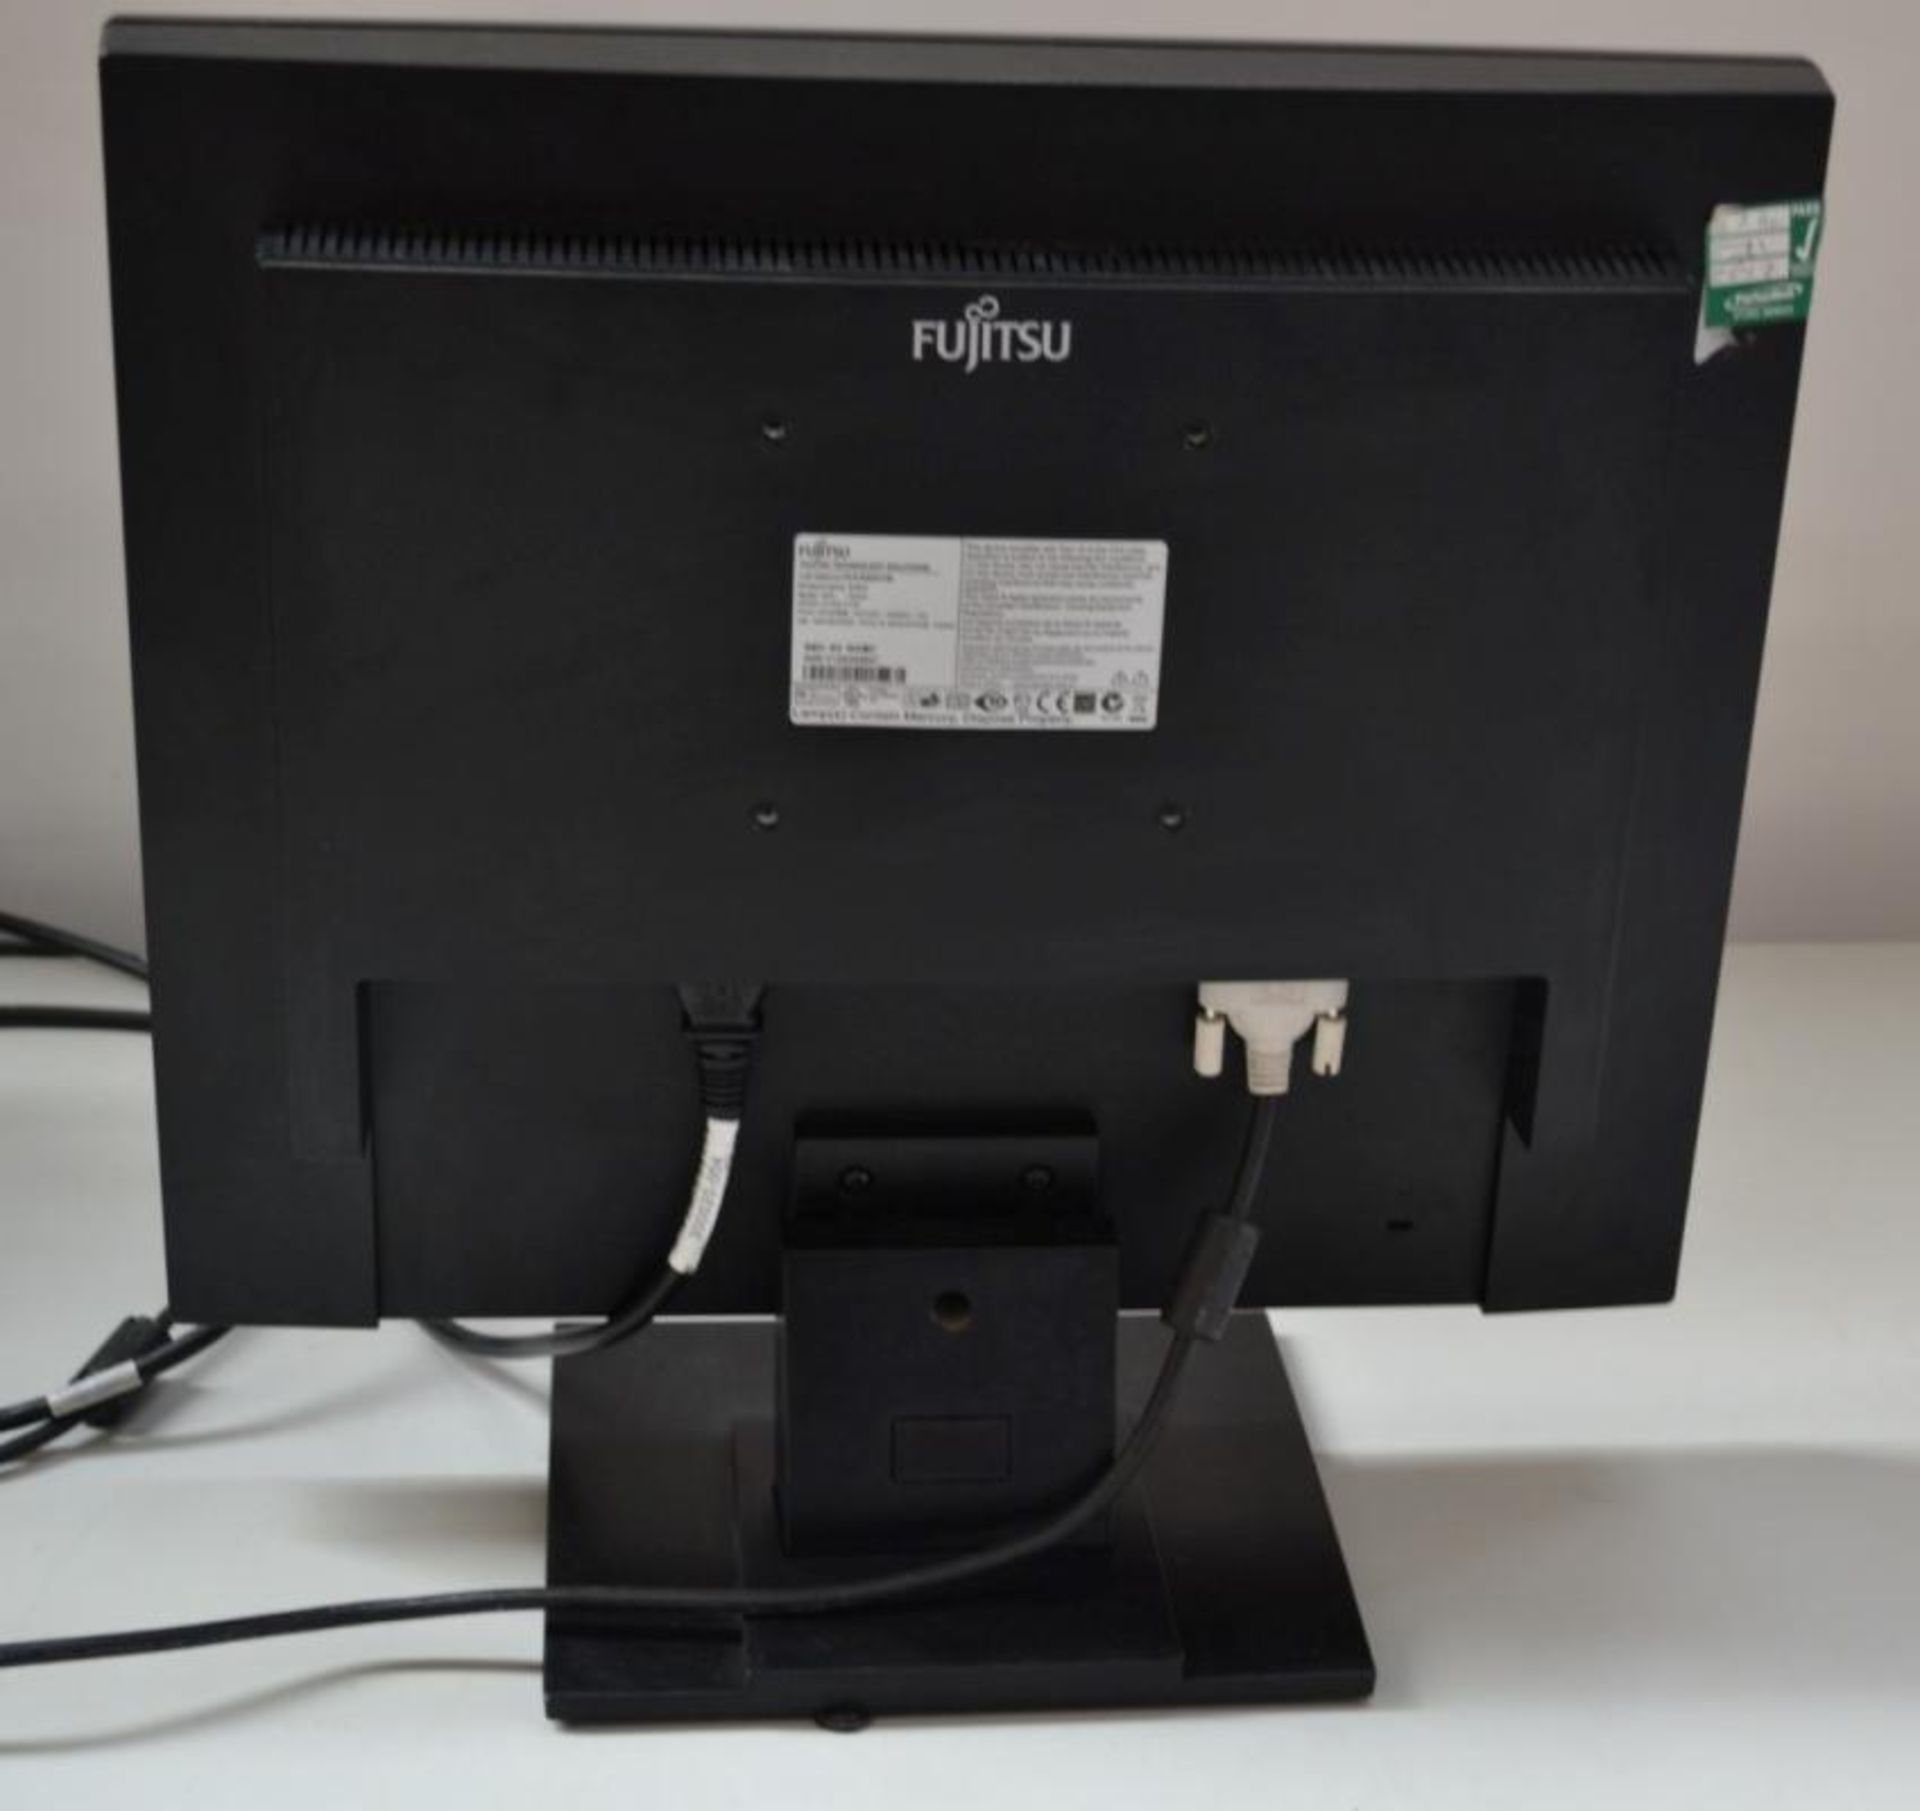 1 x Fujitsu E19-5 19-inch TFT LCD PC Monitor - Ref J2261 - CL394 - Location: Altrincham WA14 - HKPal - Image 3 of 3